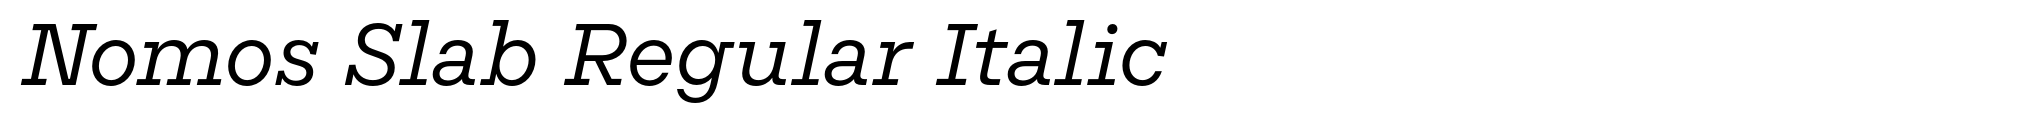 Nomos Slab Regular Italic image